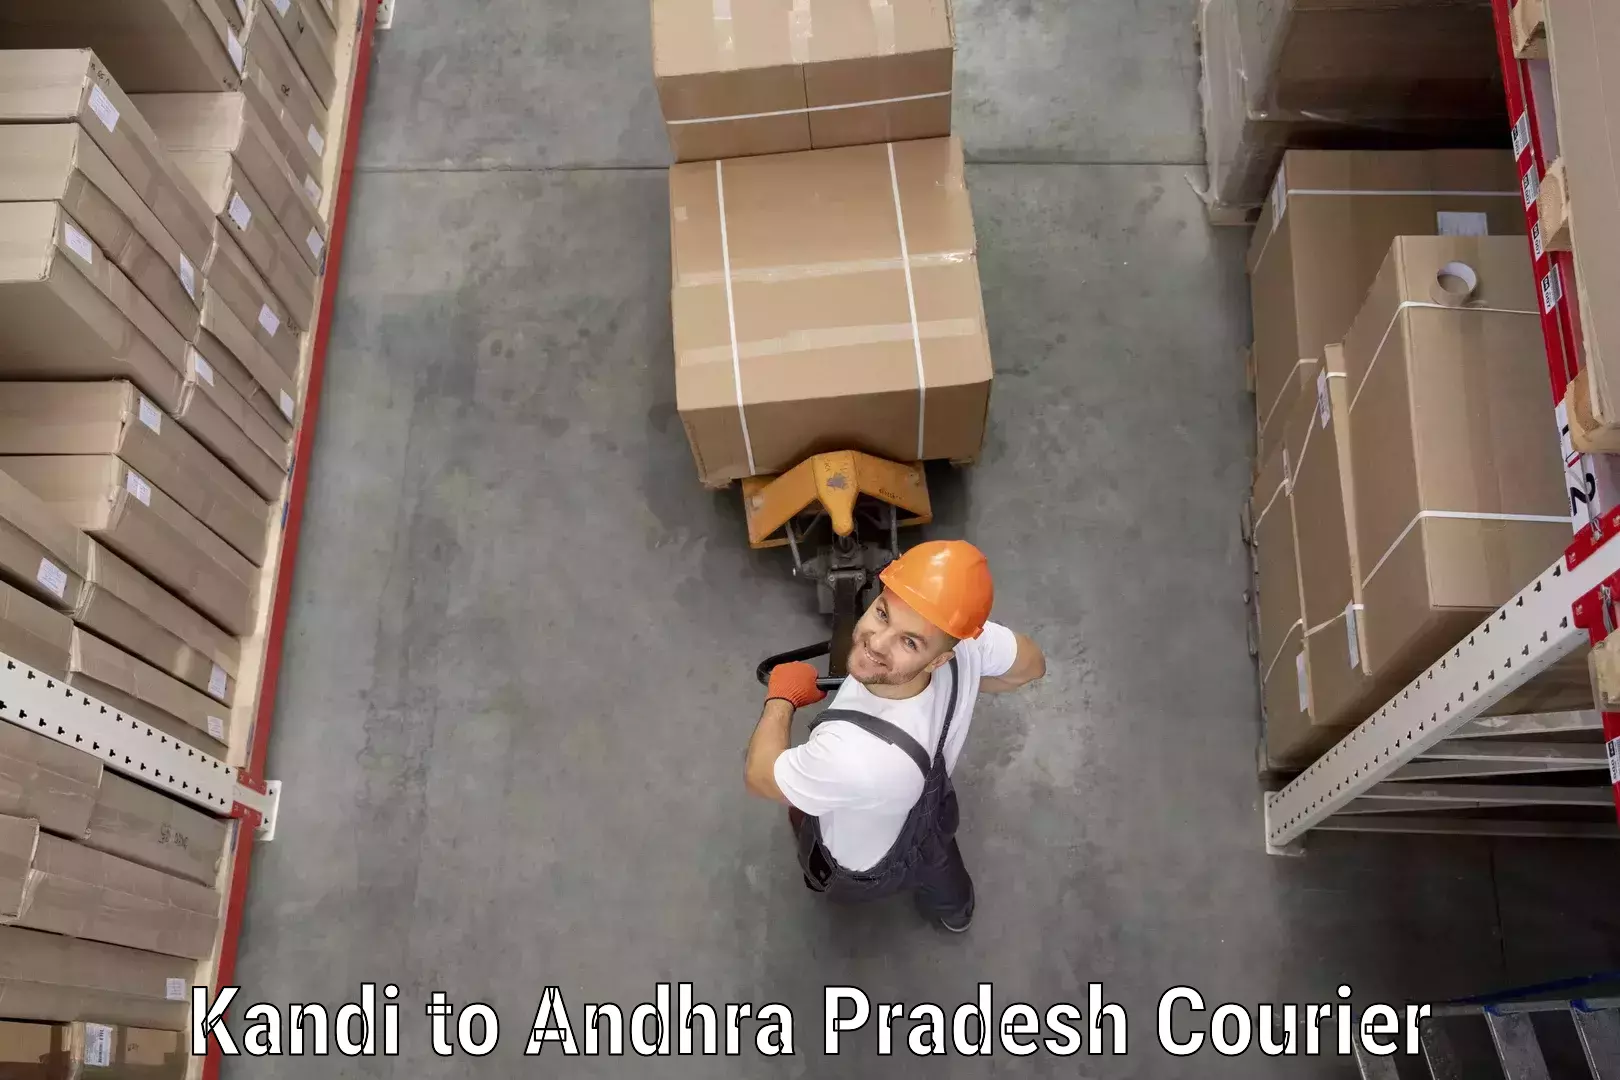 Digital courier platforms Kandi to Andhra Pradesh